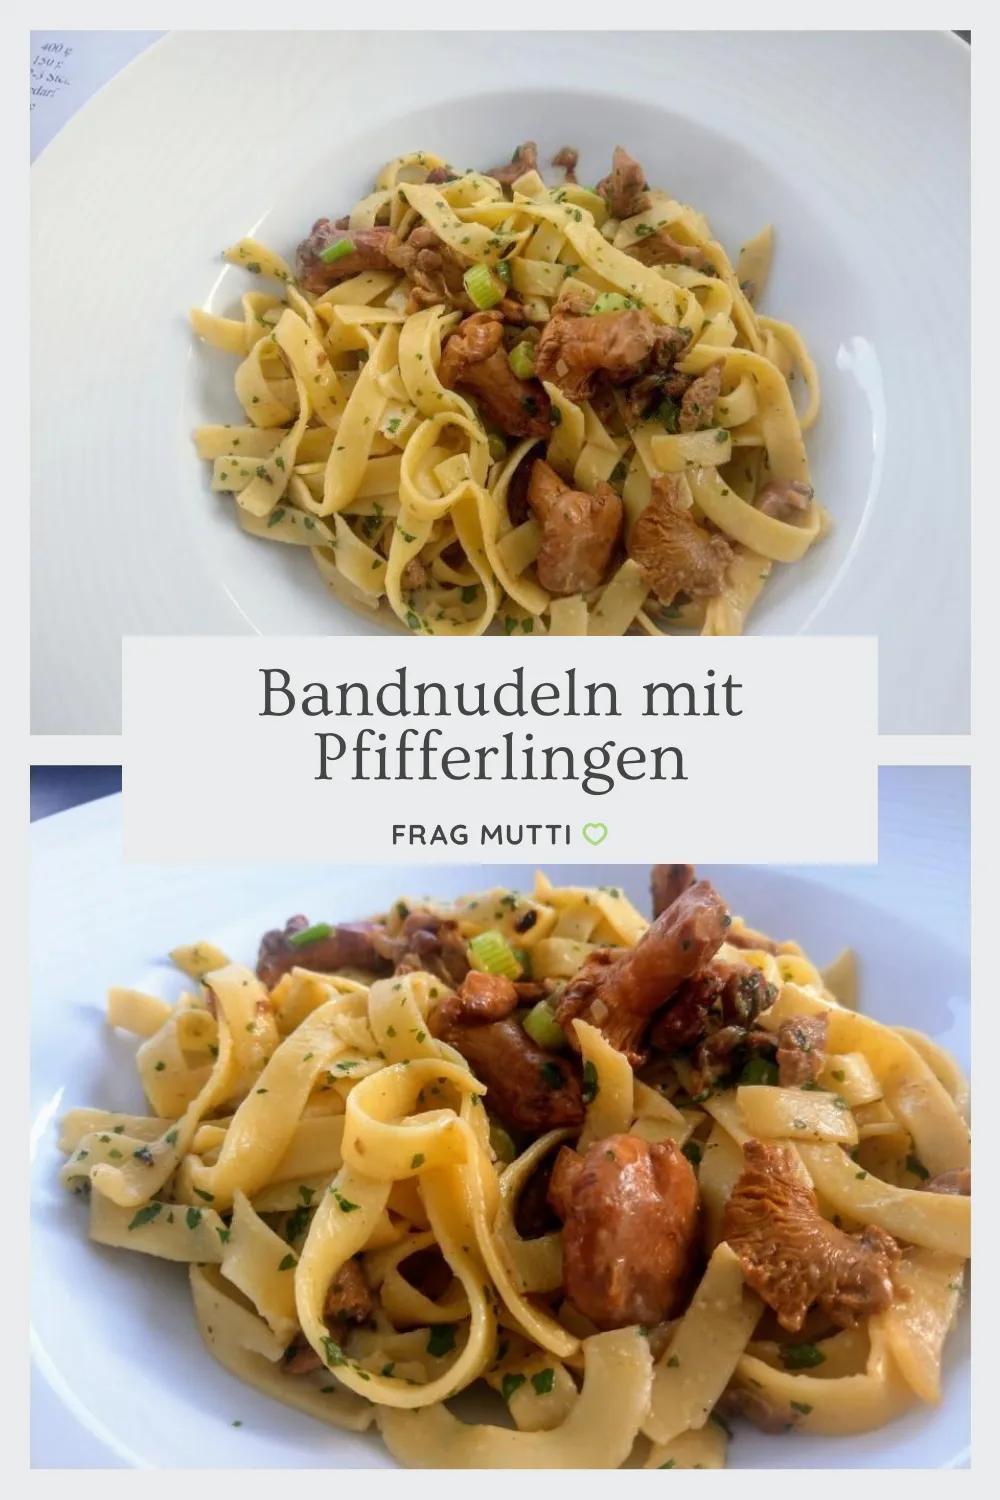 Bandnudeln mit Pfifferlingen in Knoblauchrahm - Rezept | Frag Mutti ...